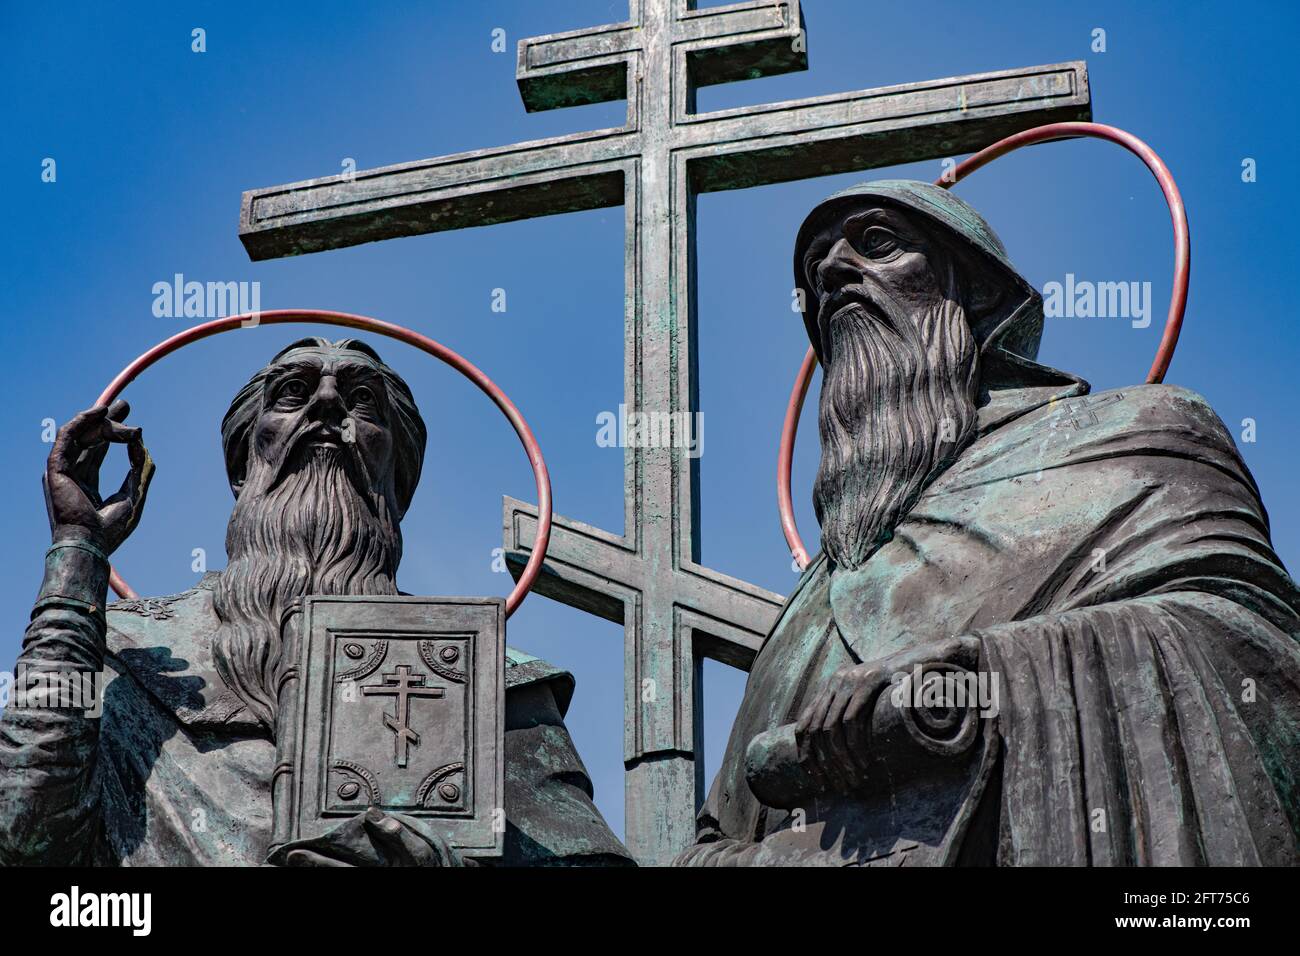 KOLOMNA, RUSSIA - 30 MAGGIO 2020: Monumento a San Cirillo e Metodio nella Piazza della Cattedrale di Kolomna, Russia Foto Stock